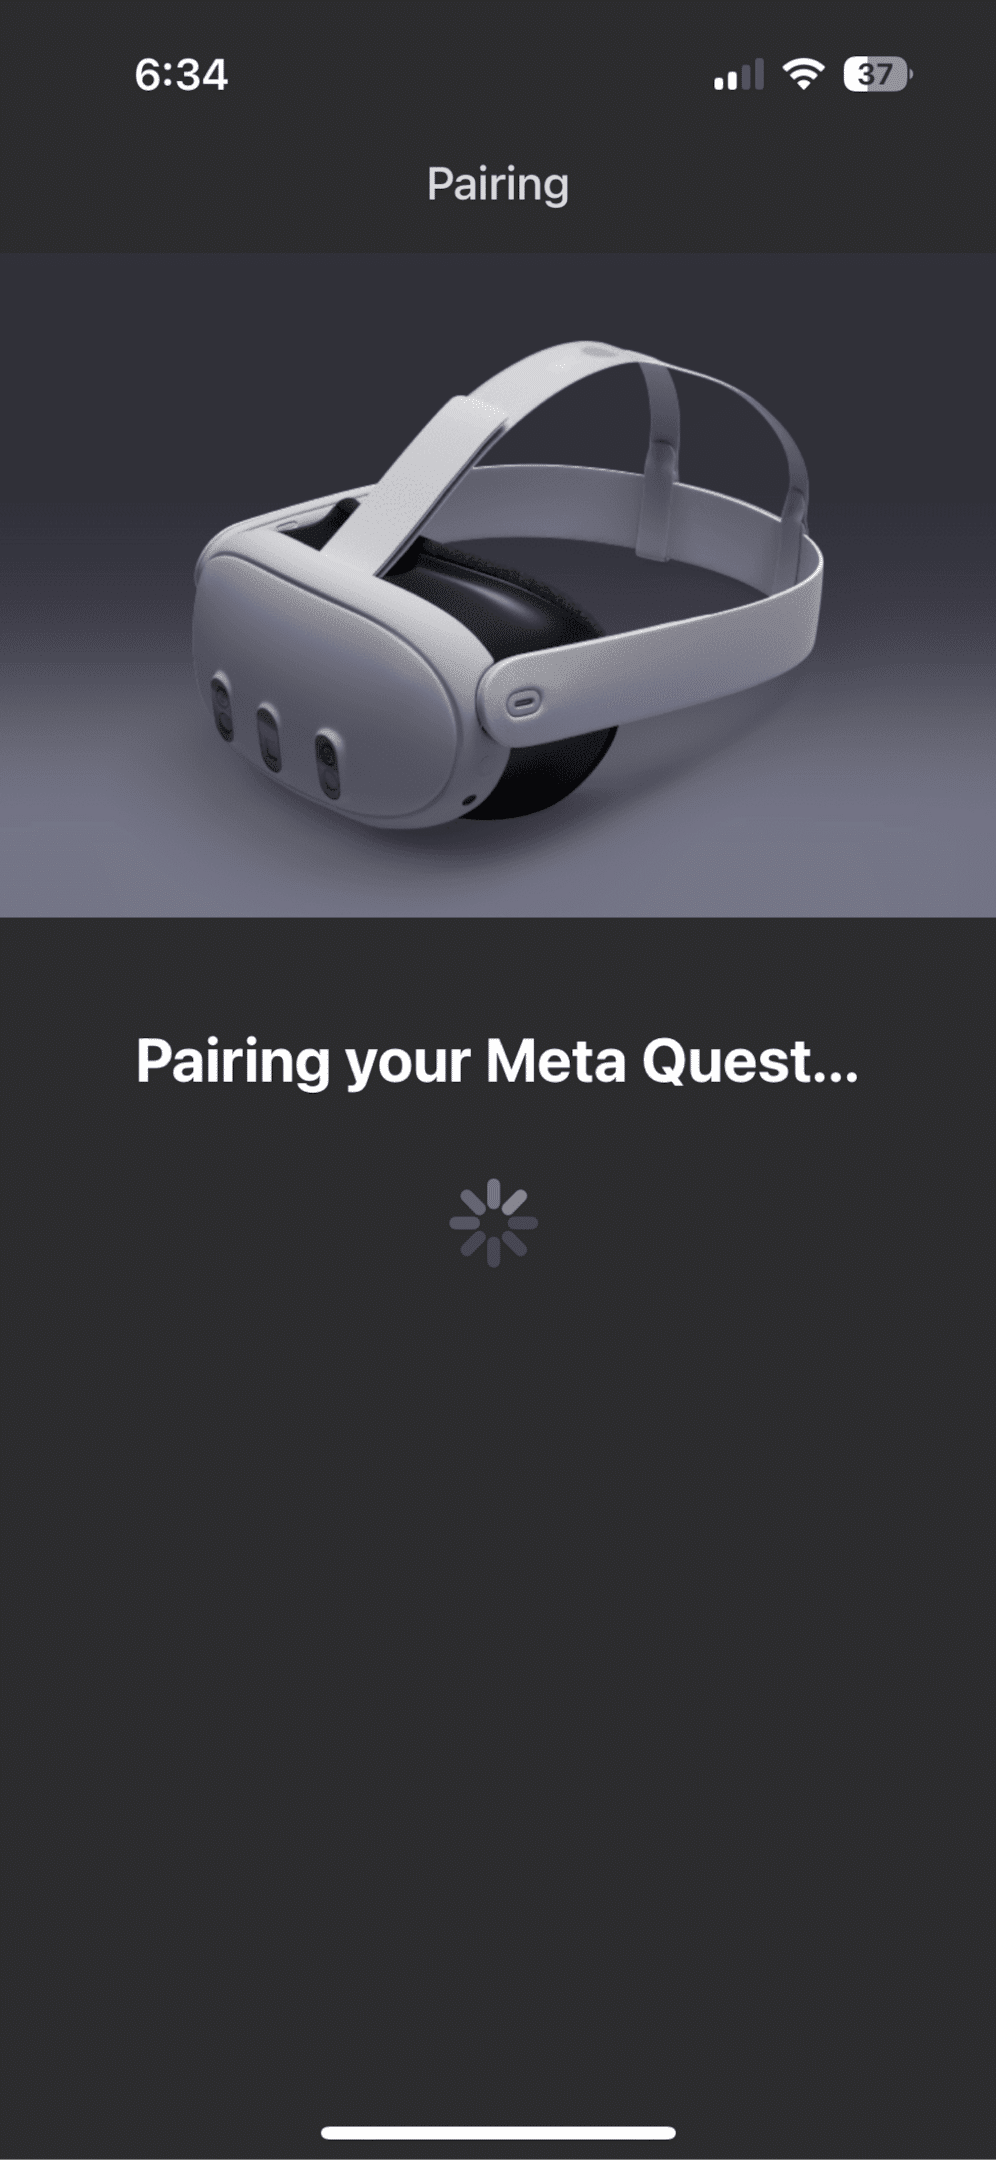 meta quest 3 pairing complete